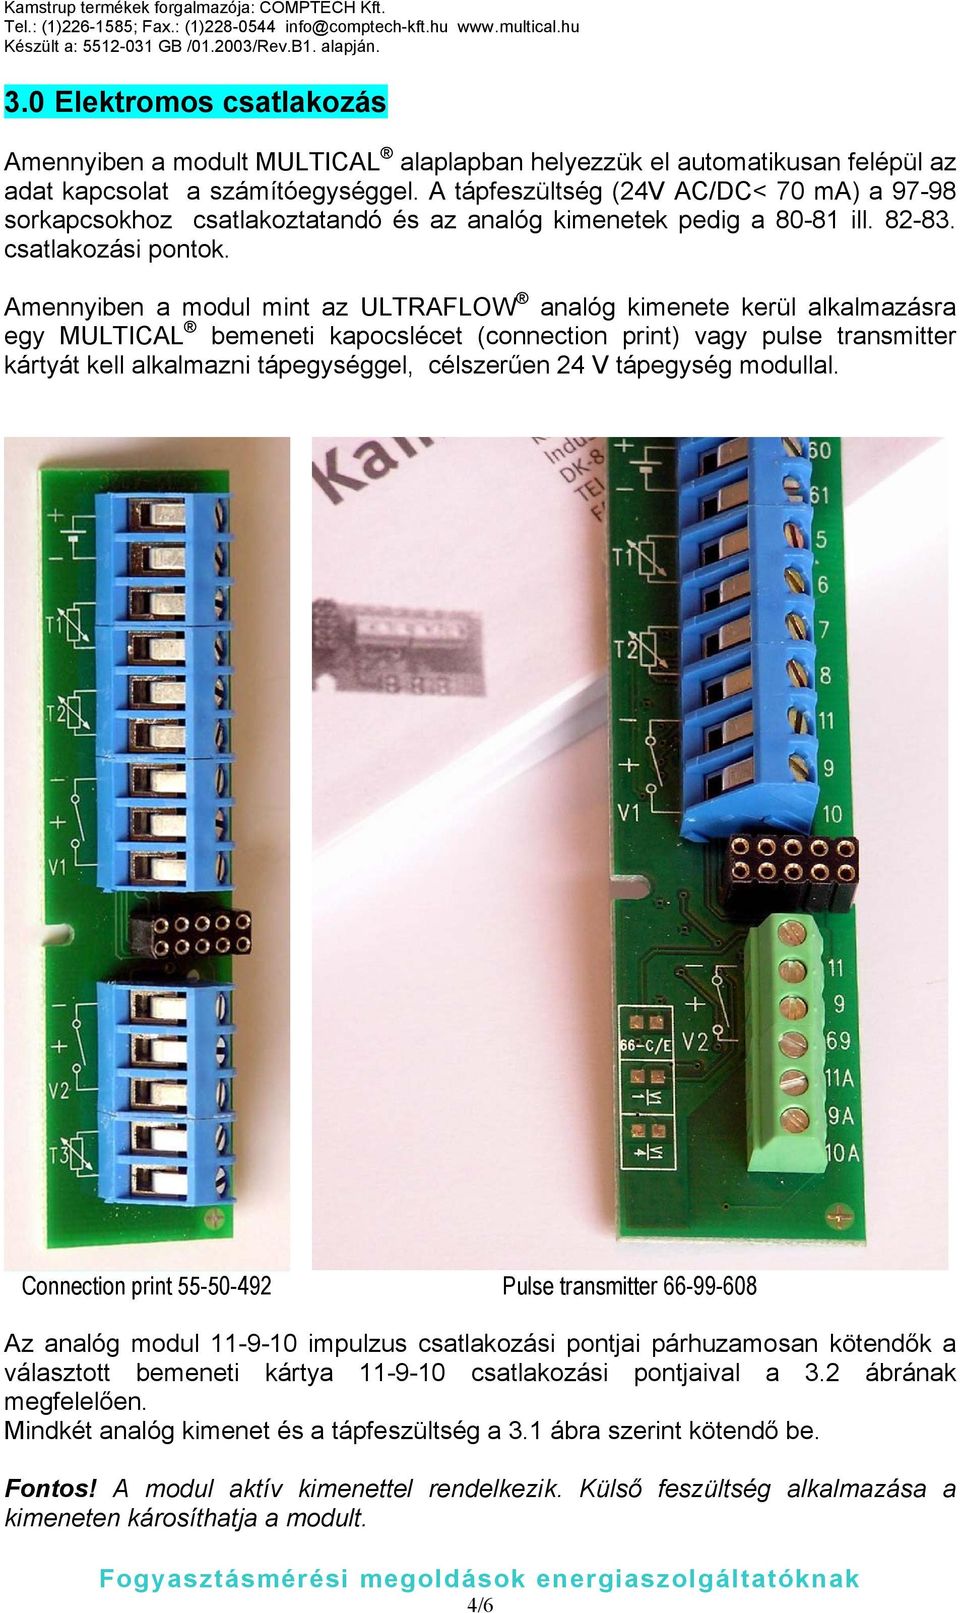 Amennyiben a modul mint az ULTRAFLOW analóg kimenete kerül alkalmazásra egy MULTICAL bemeneti kapocslécet (connection print) vagy pulse transmitter kártyát kell alkalmazni tápegységgel, célszerűen 24